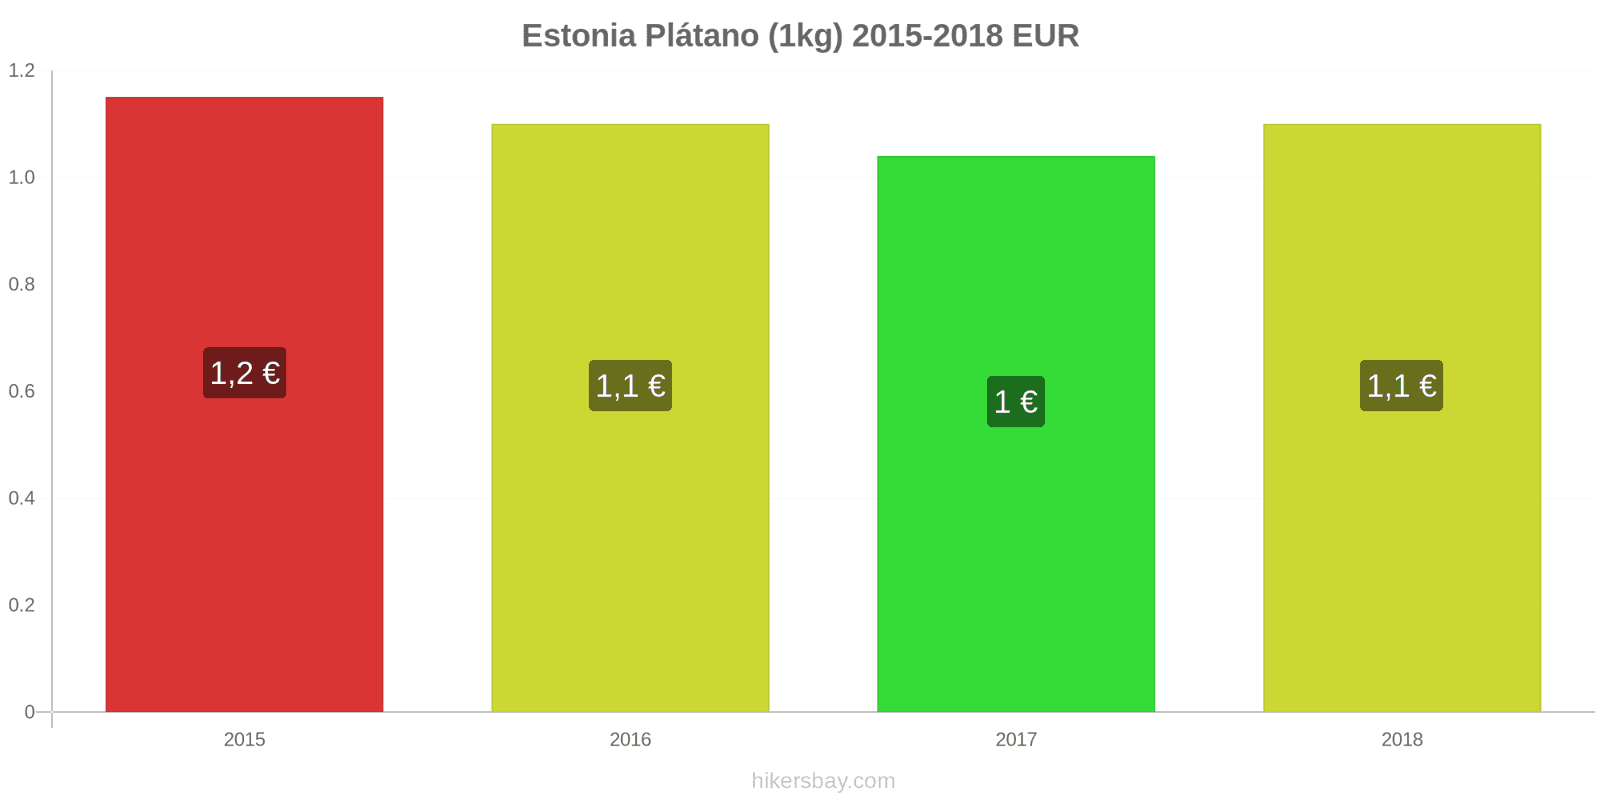 Estonia cambios de precios Plátanos (1kg) hikersbay.com